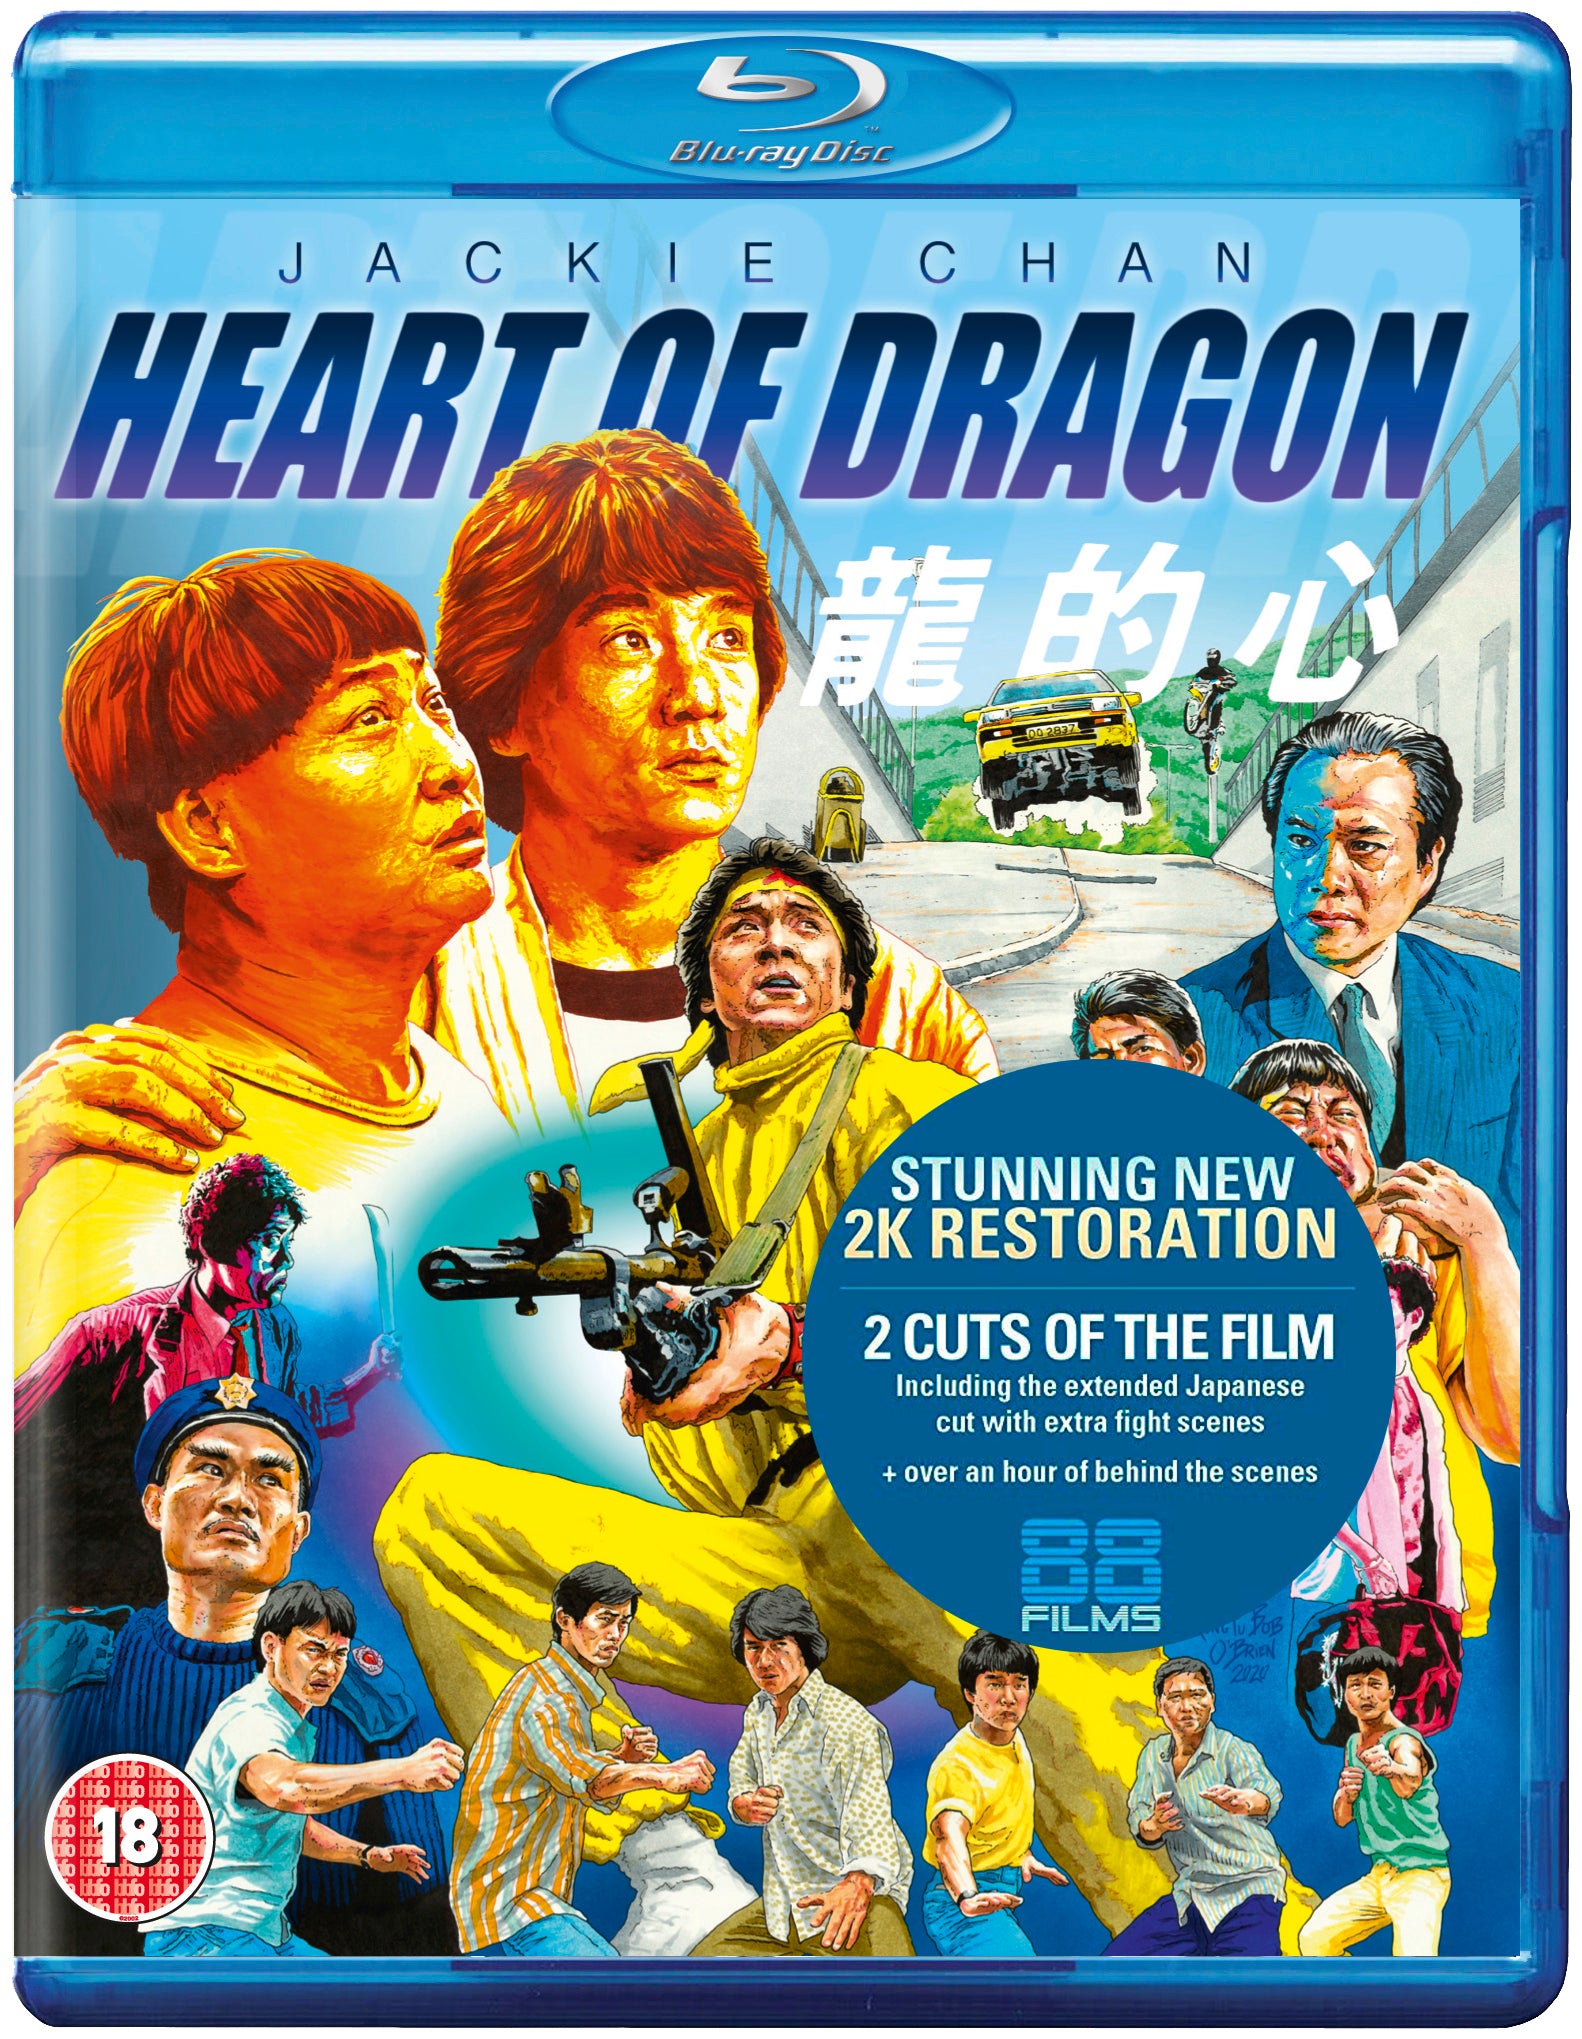 Jackie Chan – 88 Films